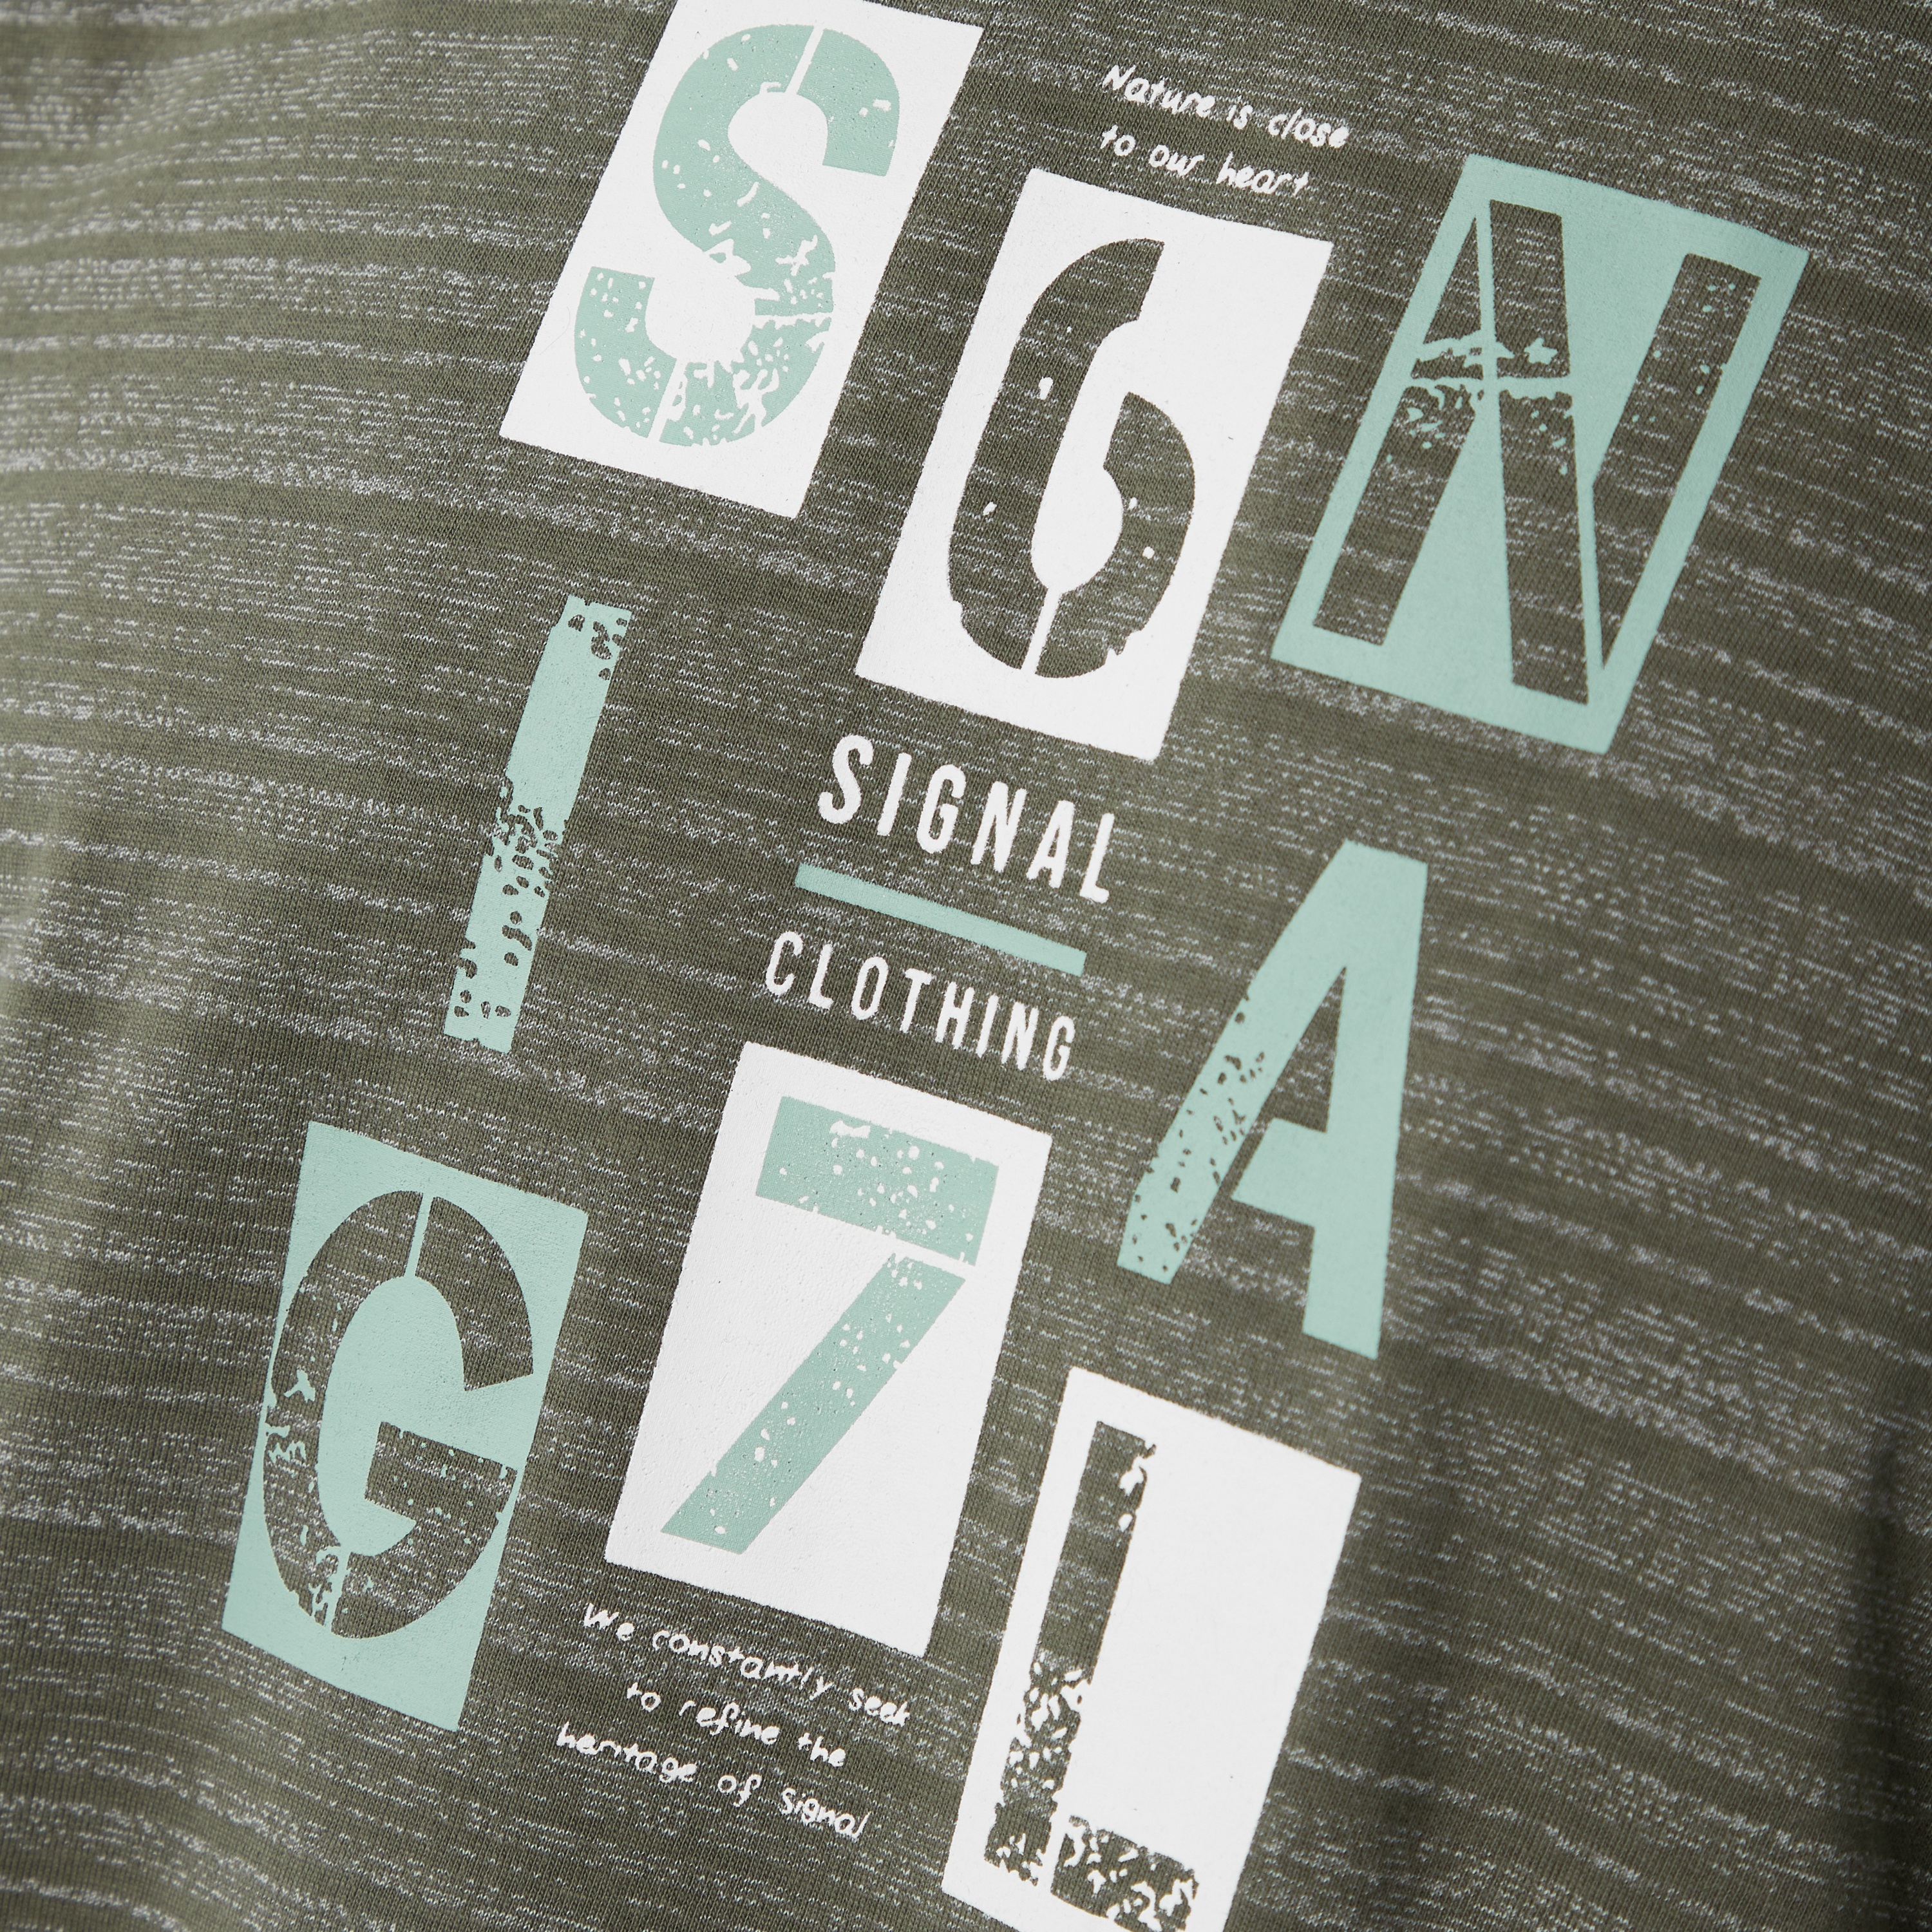 Gavin Stripe T-shirt, Green Kalamata, M